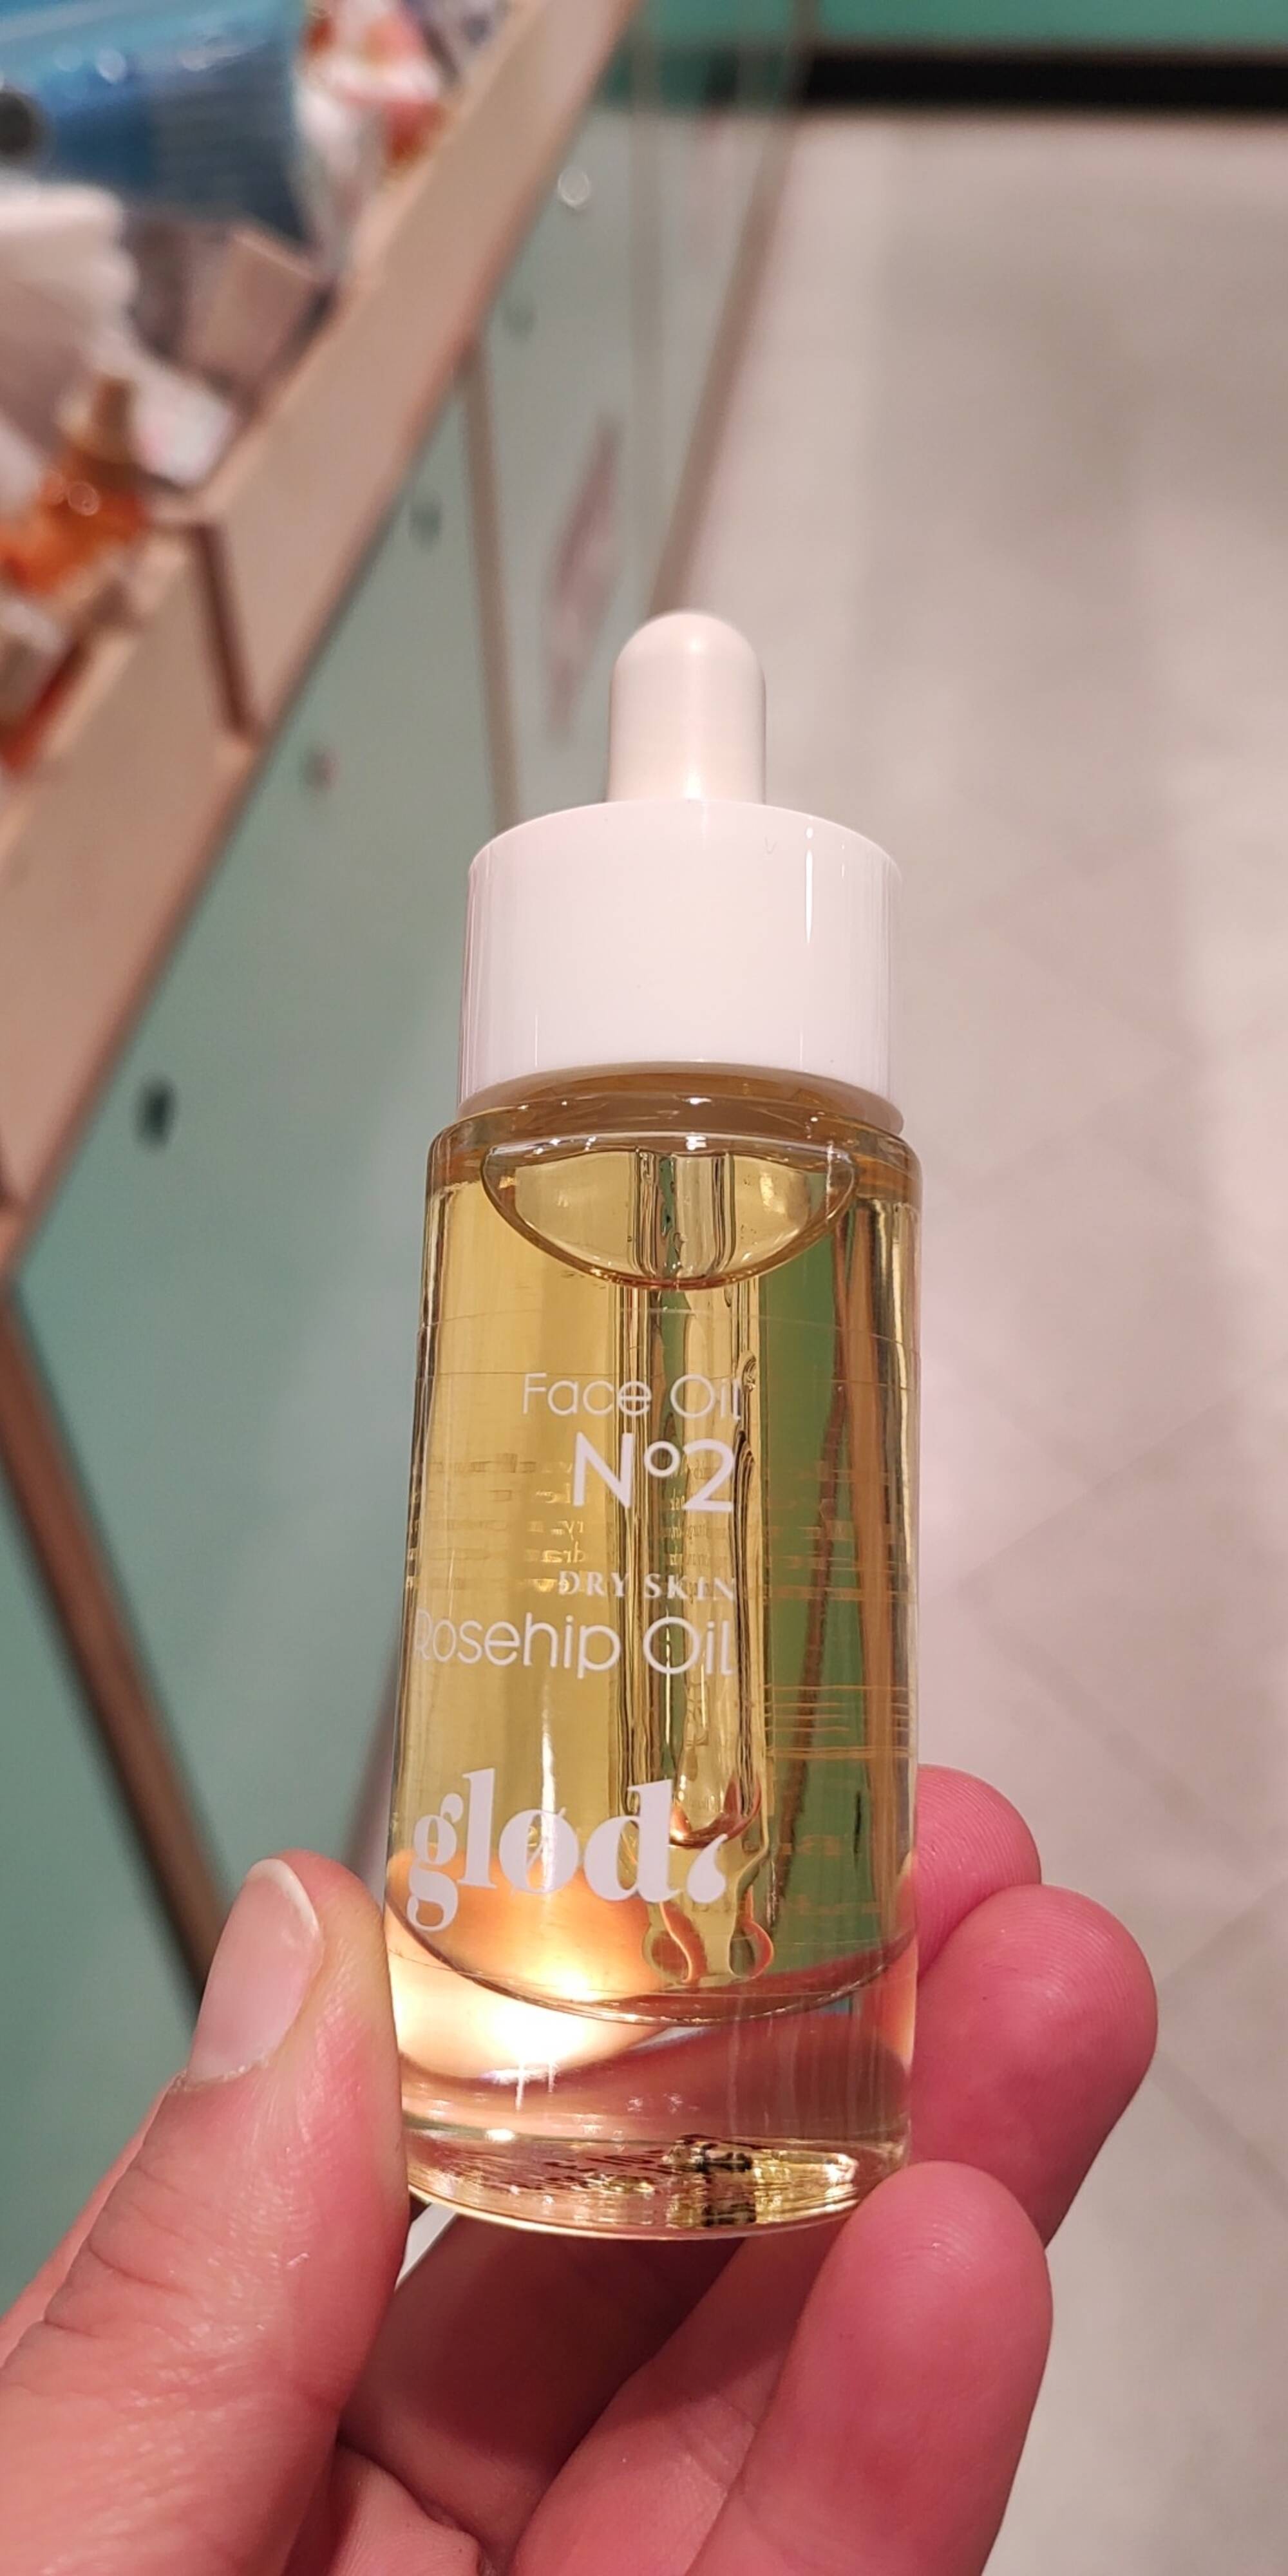 GLOD - Face oil n° 2 - Rosehip oil dry skin 